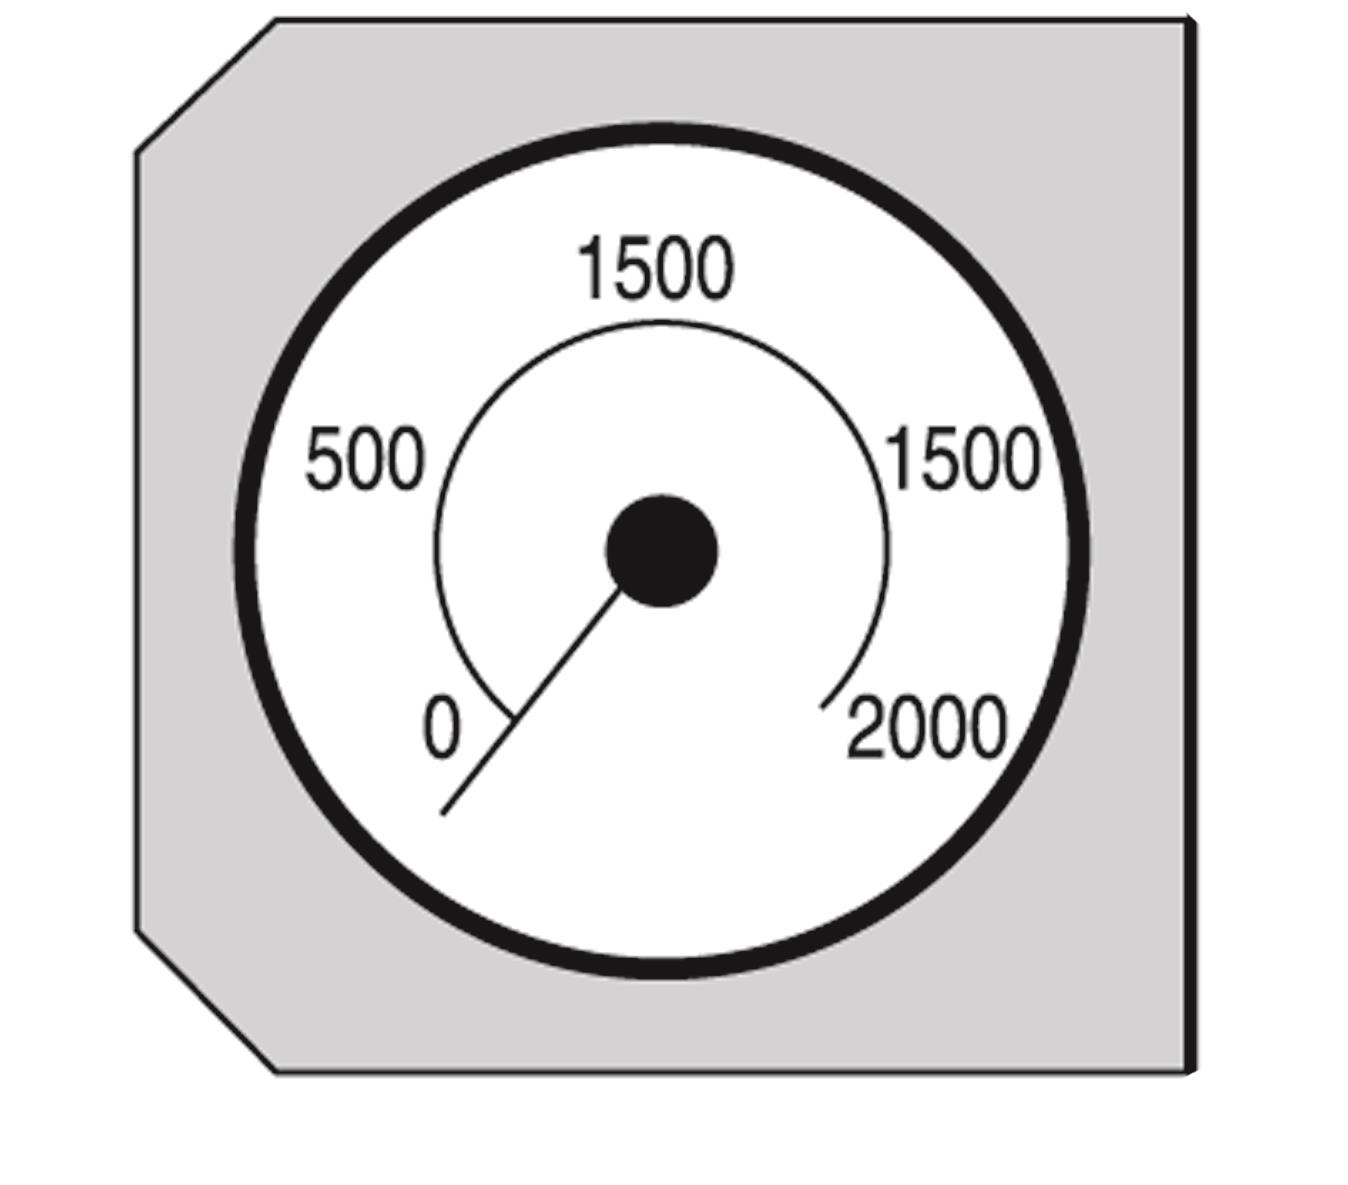 Kit manomètre
Mesure la chute de pression par les cartouches filtrantes. Monté sur le support FilterMax.